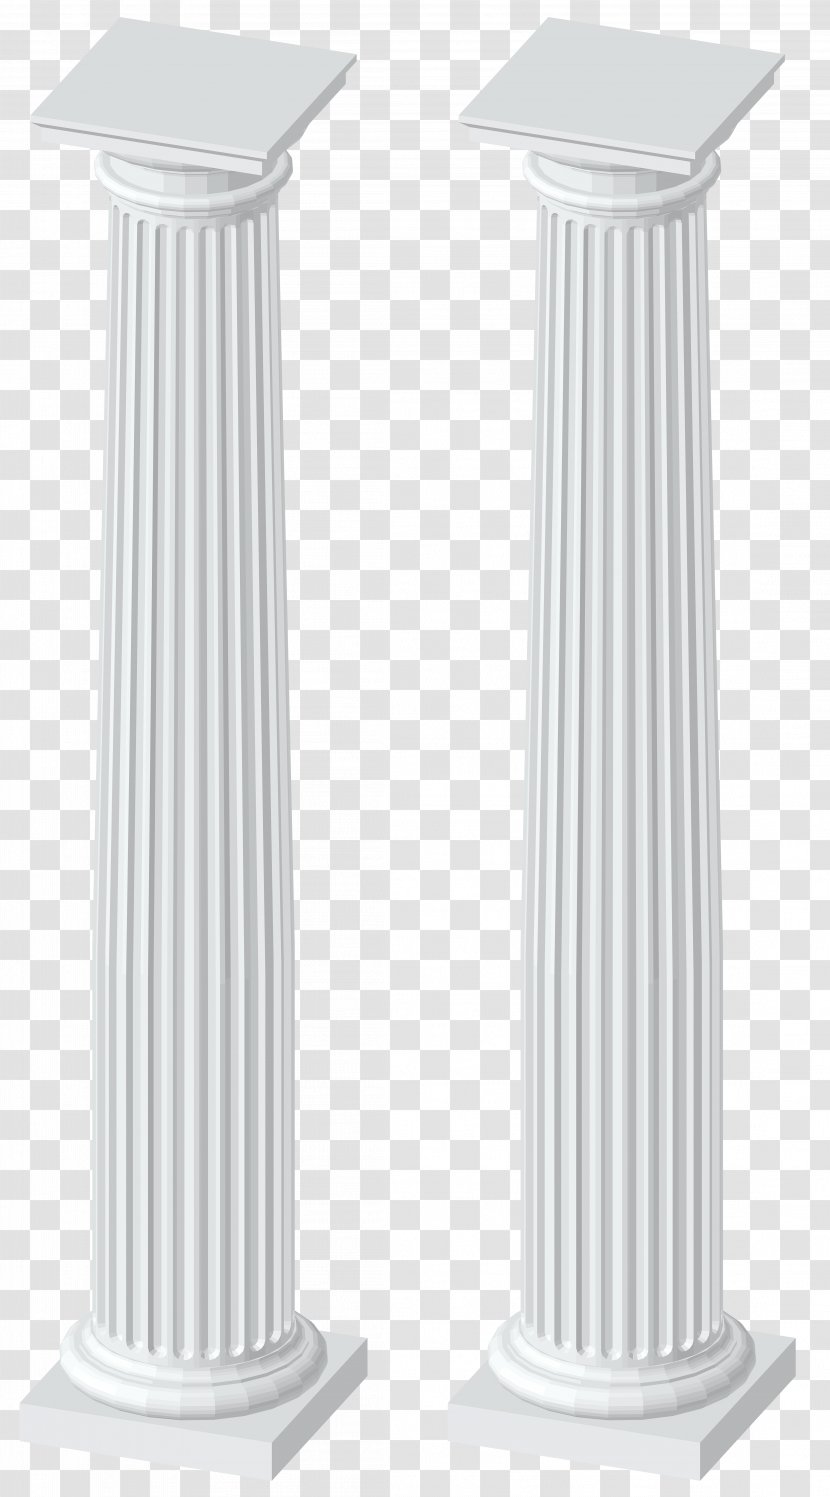 Angle - White Columns - Transparent Clip Art Image Transparent PNG